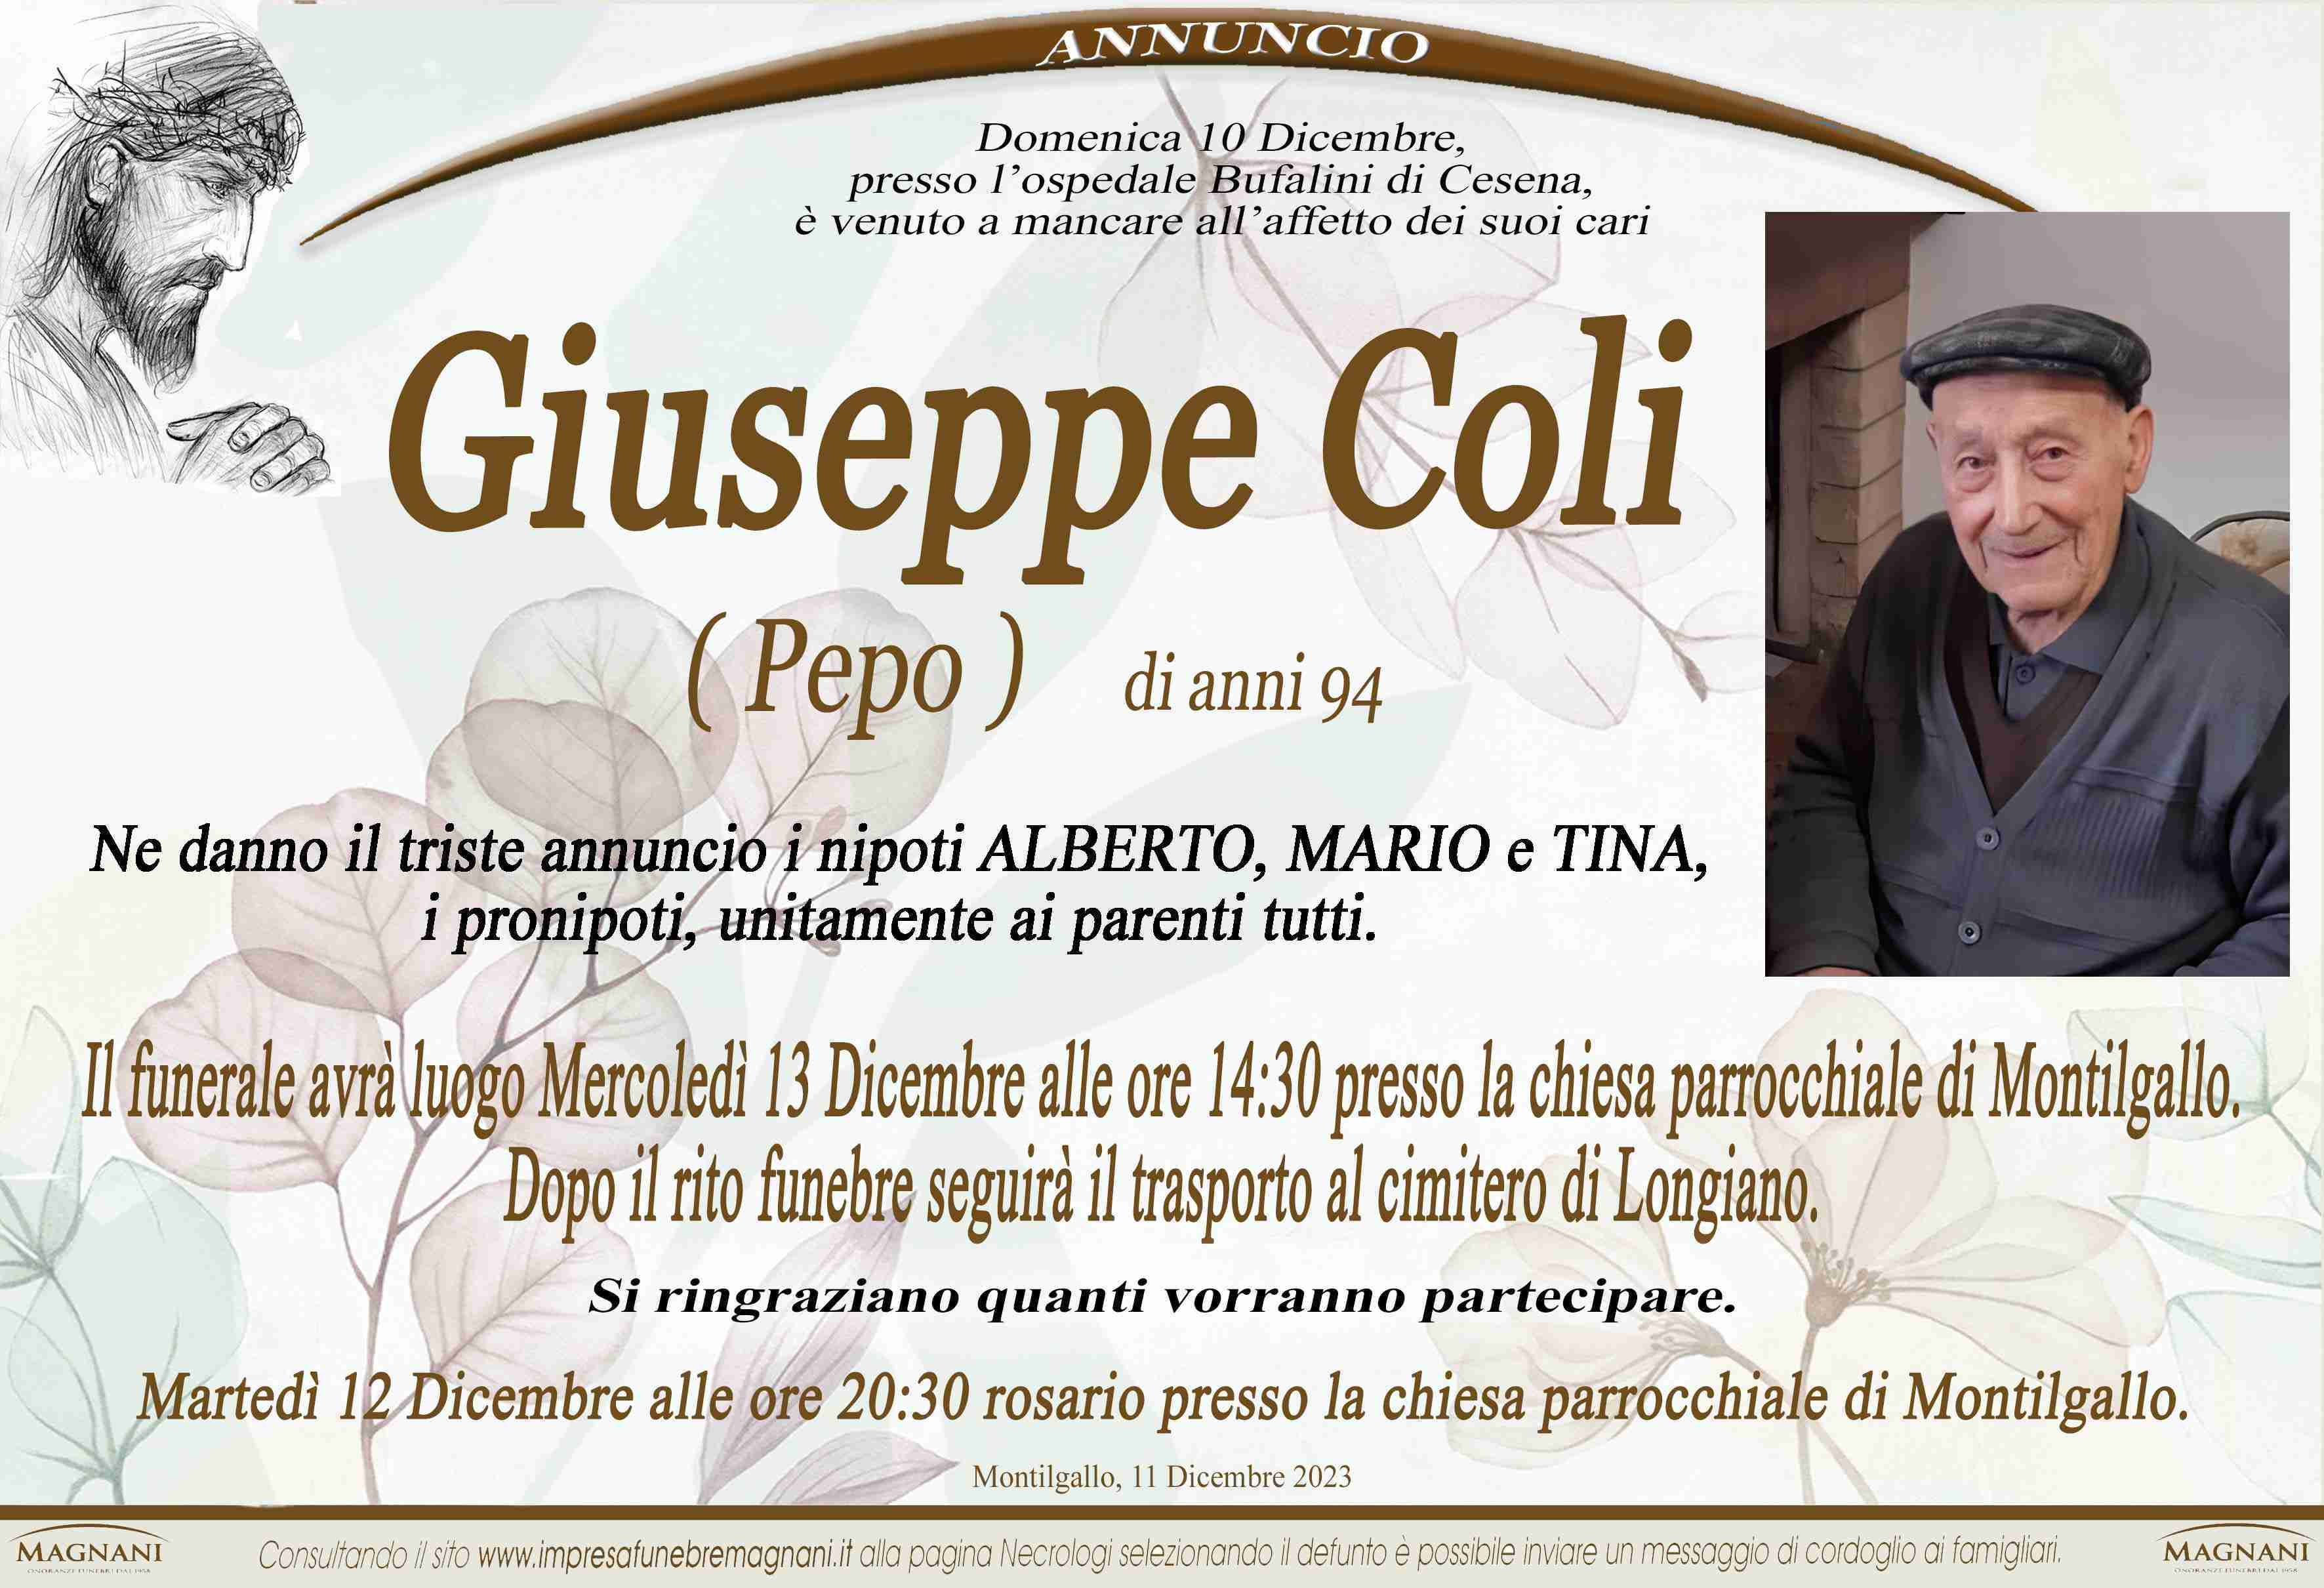 Giuseppe Coli